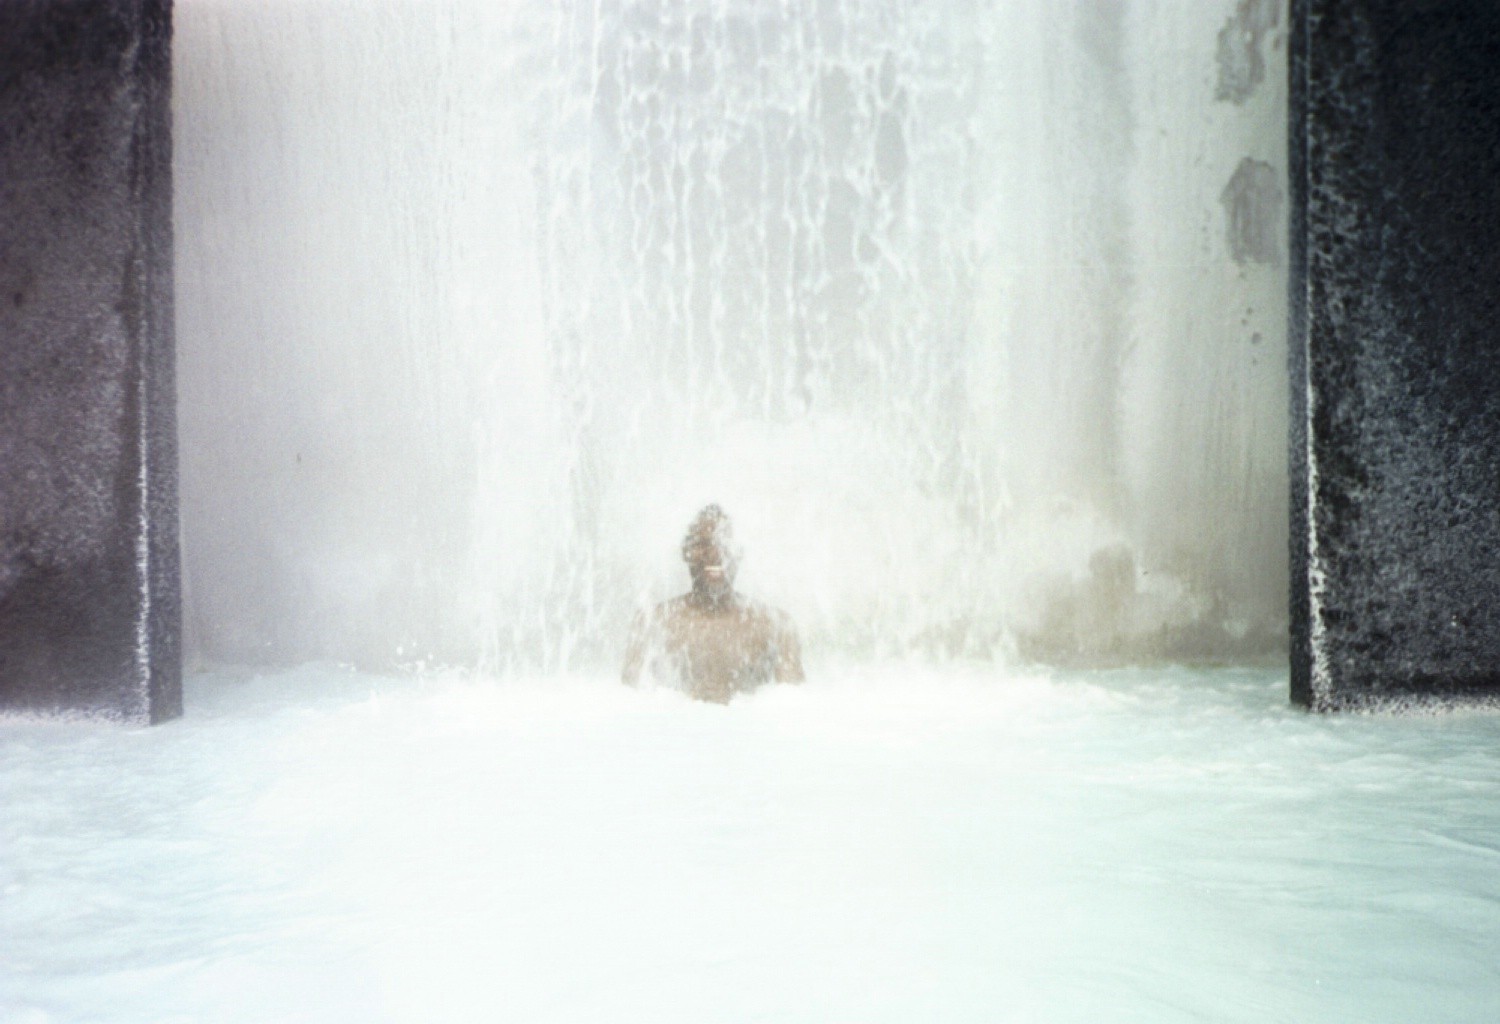 アイスランドで露天風呂⁉︎50mプール4個分の巨大ブルーラグーンで心も身体もリラックス♪